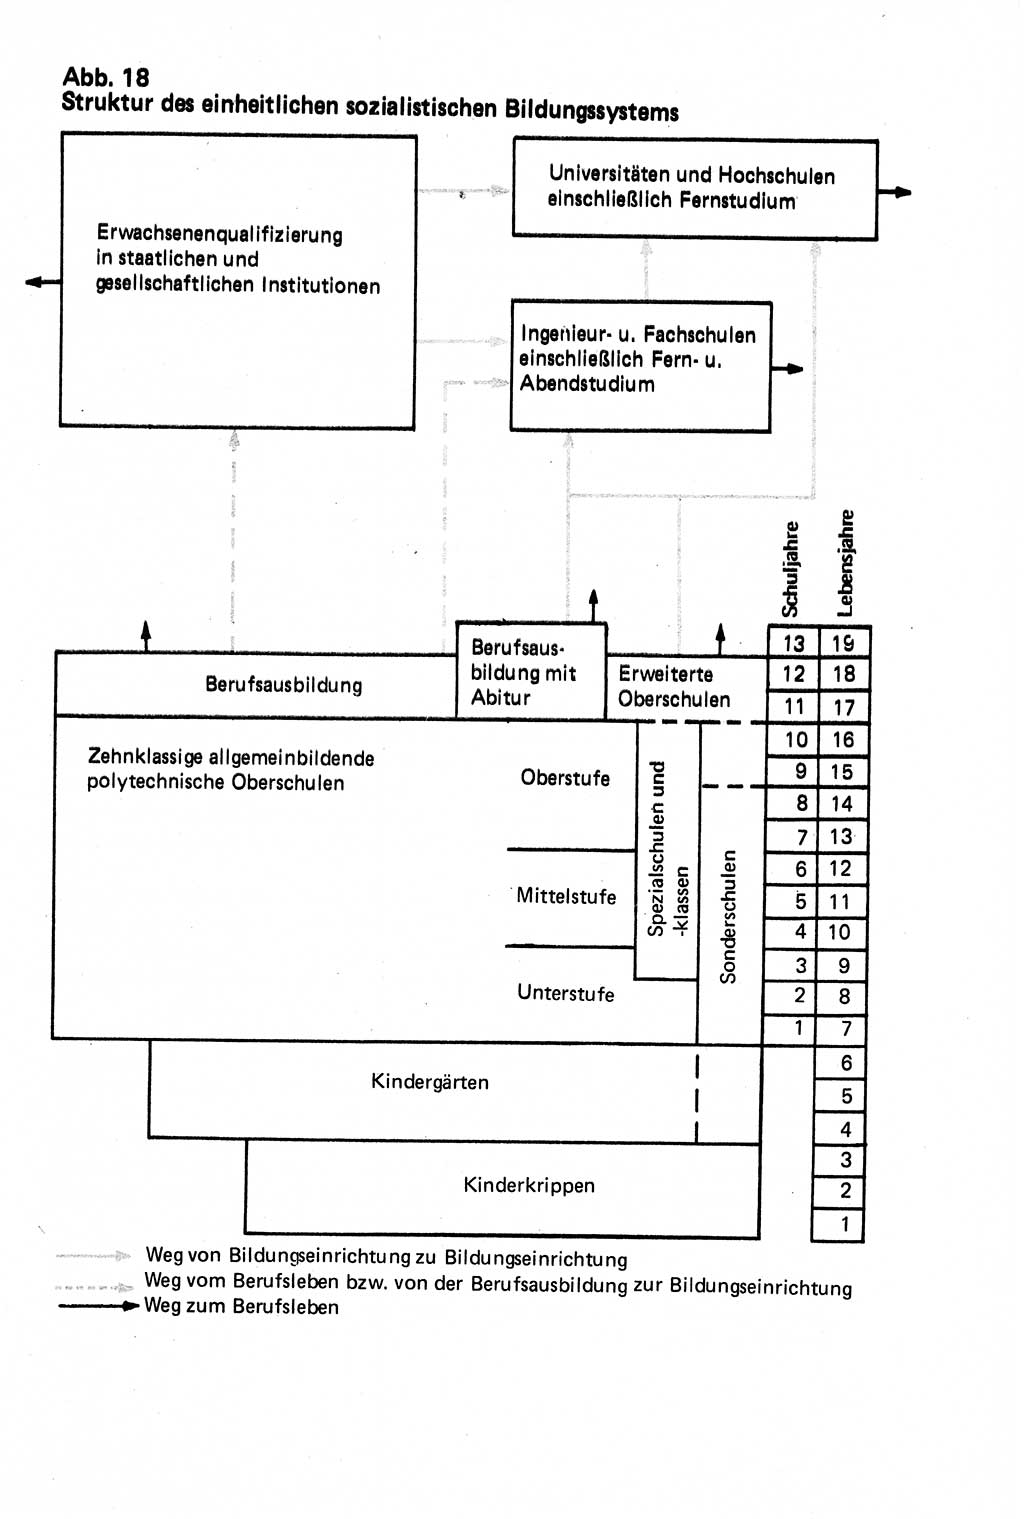 Verwaltungsrecht [Deutsche Demokratische Republik (DDR)], Lehrbuch 1979, Seite 503 (Verw.-R. DDR Lb. 1979, S. 503)